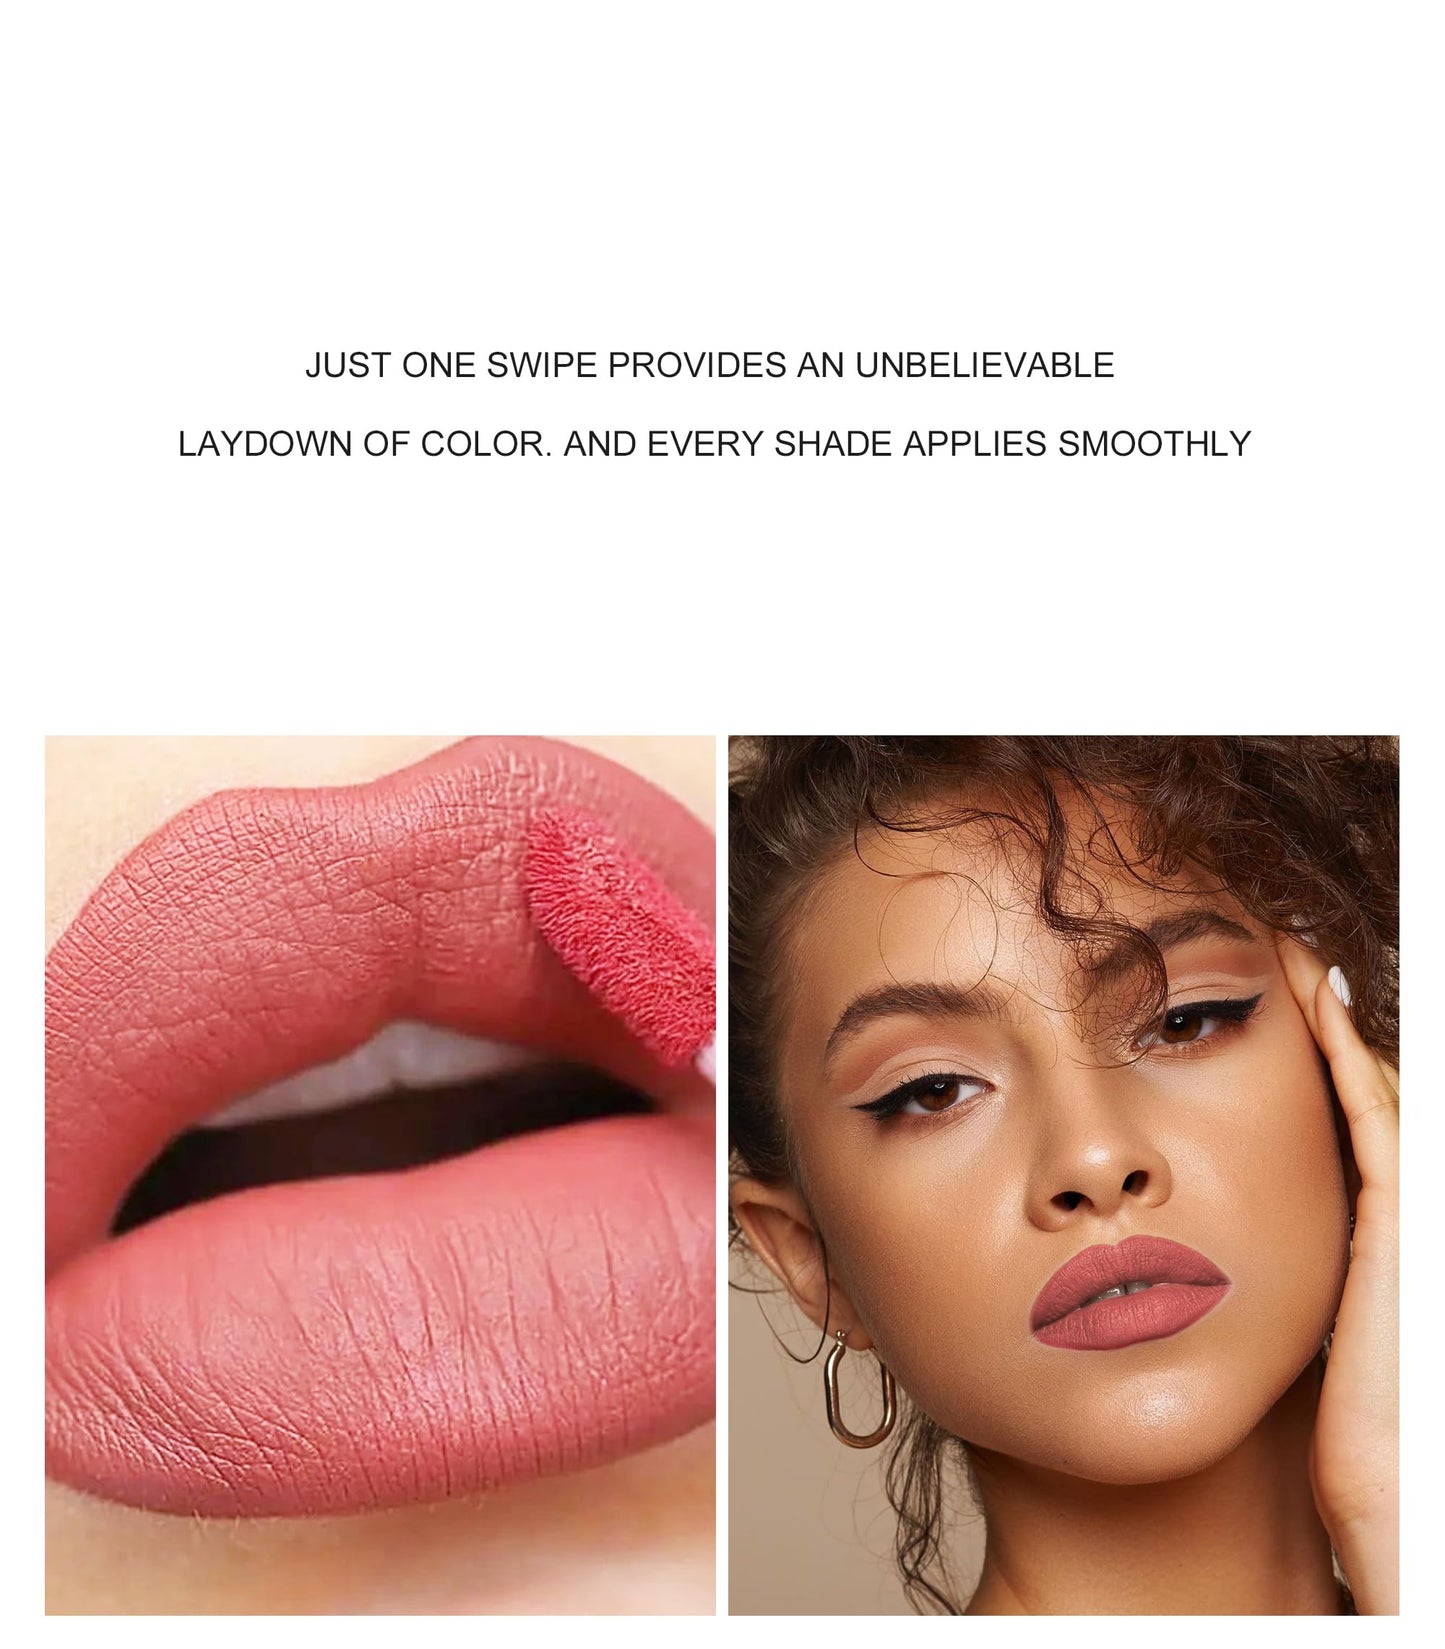 KA CAYLA Handaiyan Lip Liner & Liquid Matte Lipstick Set, Matte Liquid Lipstick + Matching Lip Liner Nude Velvety Makeup Kit Waterproof Lip Stain Kit For Women Lipliner Lip Gloss (Lip Kit #3) 4.2g